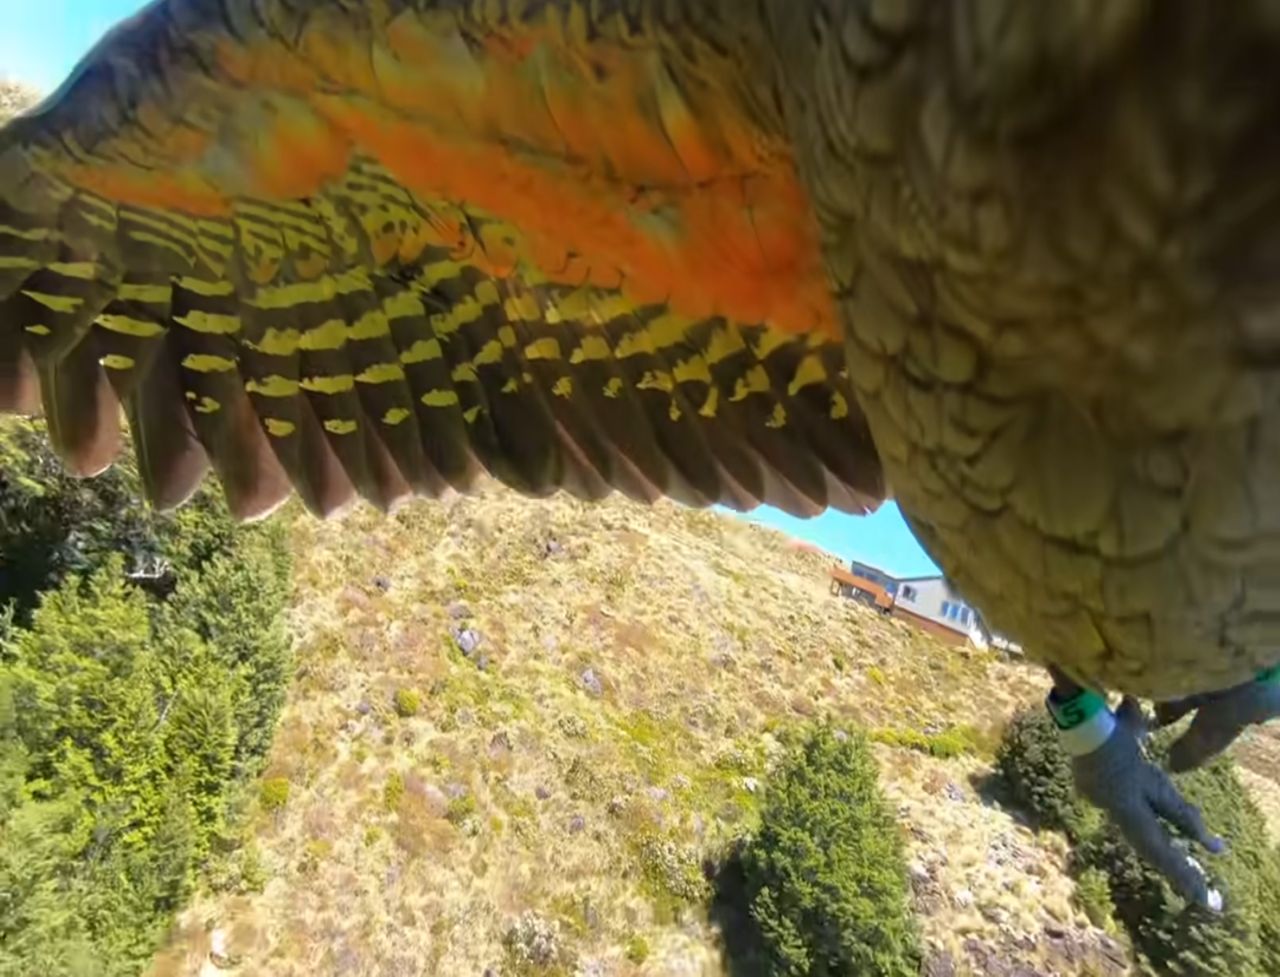 Papuga ukradła GoPro. Nagranie robi furorę w sieci